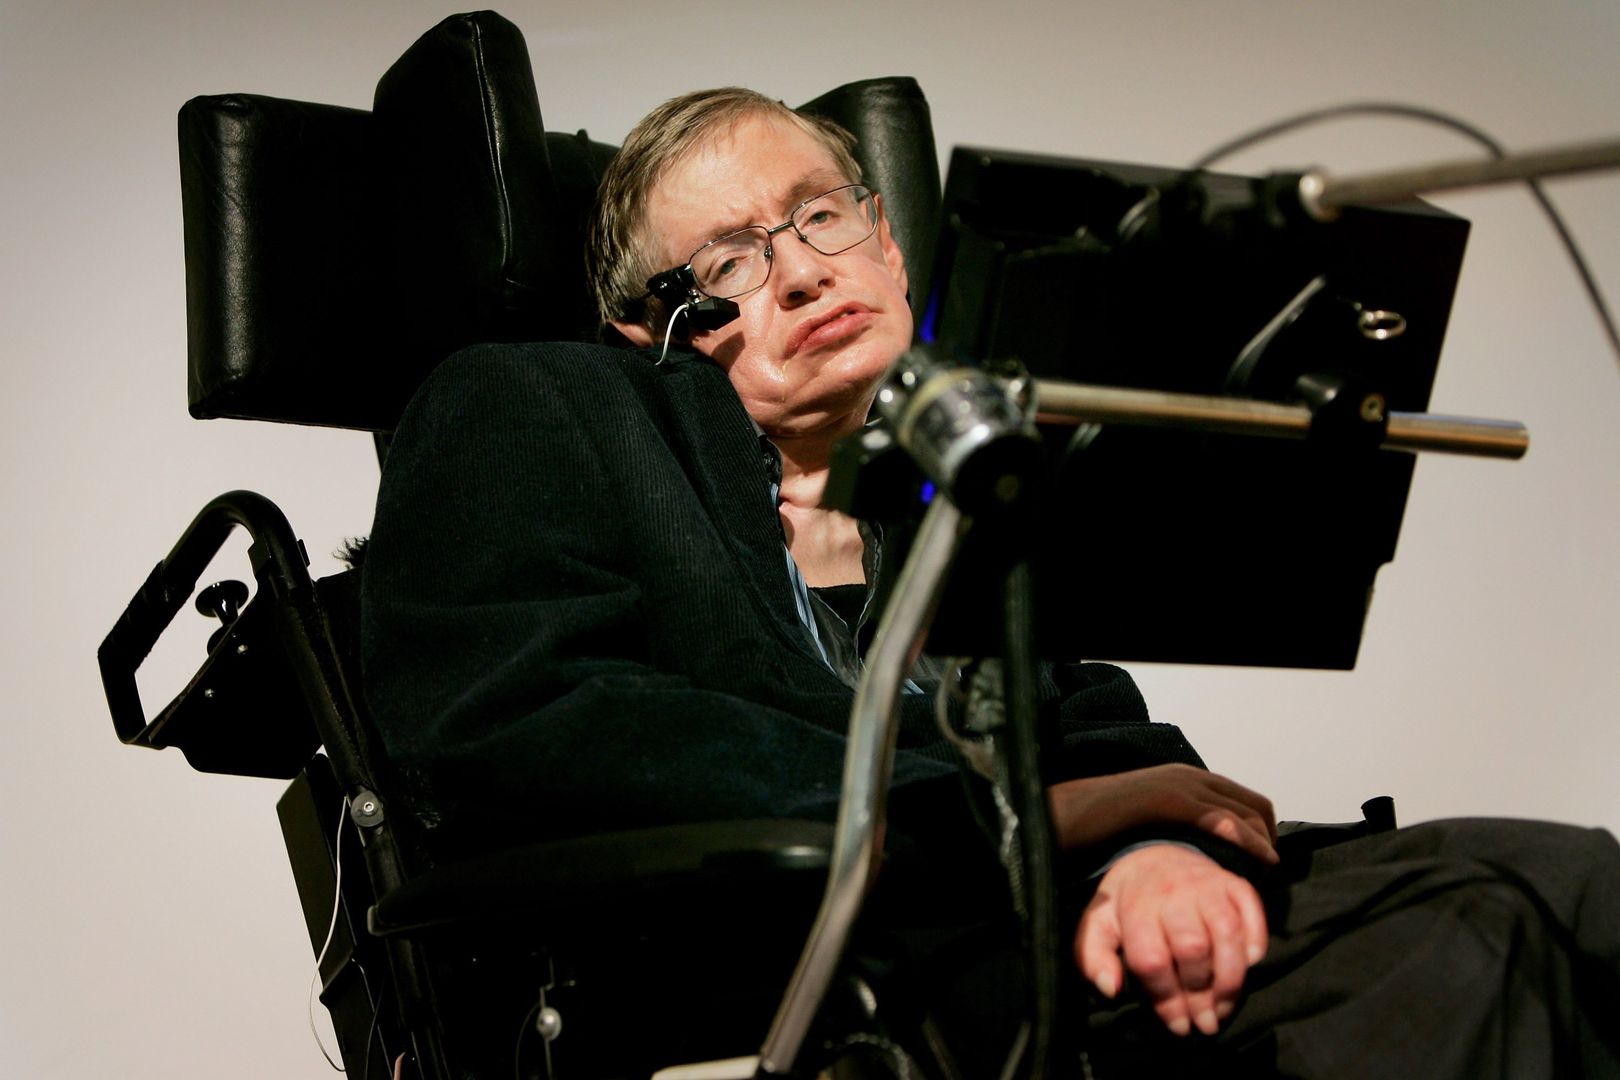 Wózek profesora Hawkinga sprzedany za równowartość 1,5 mln złotych